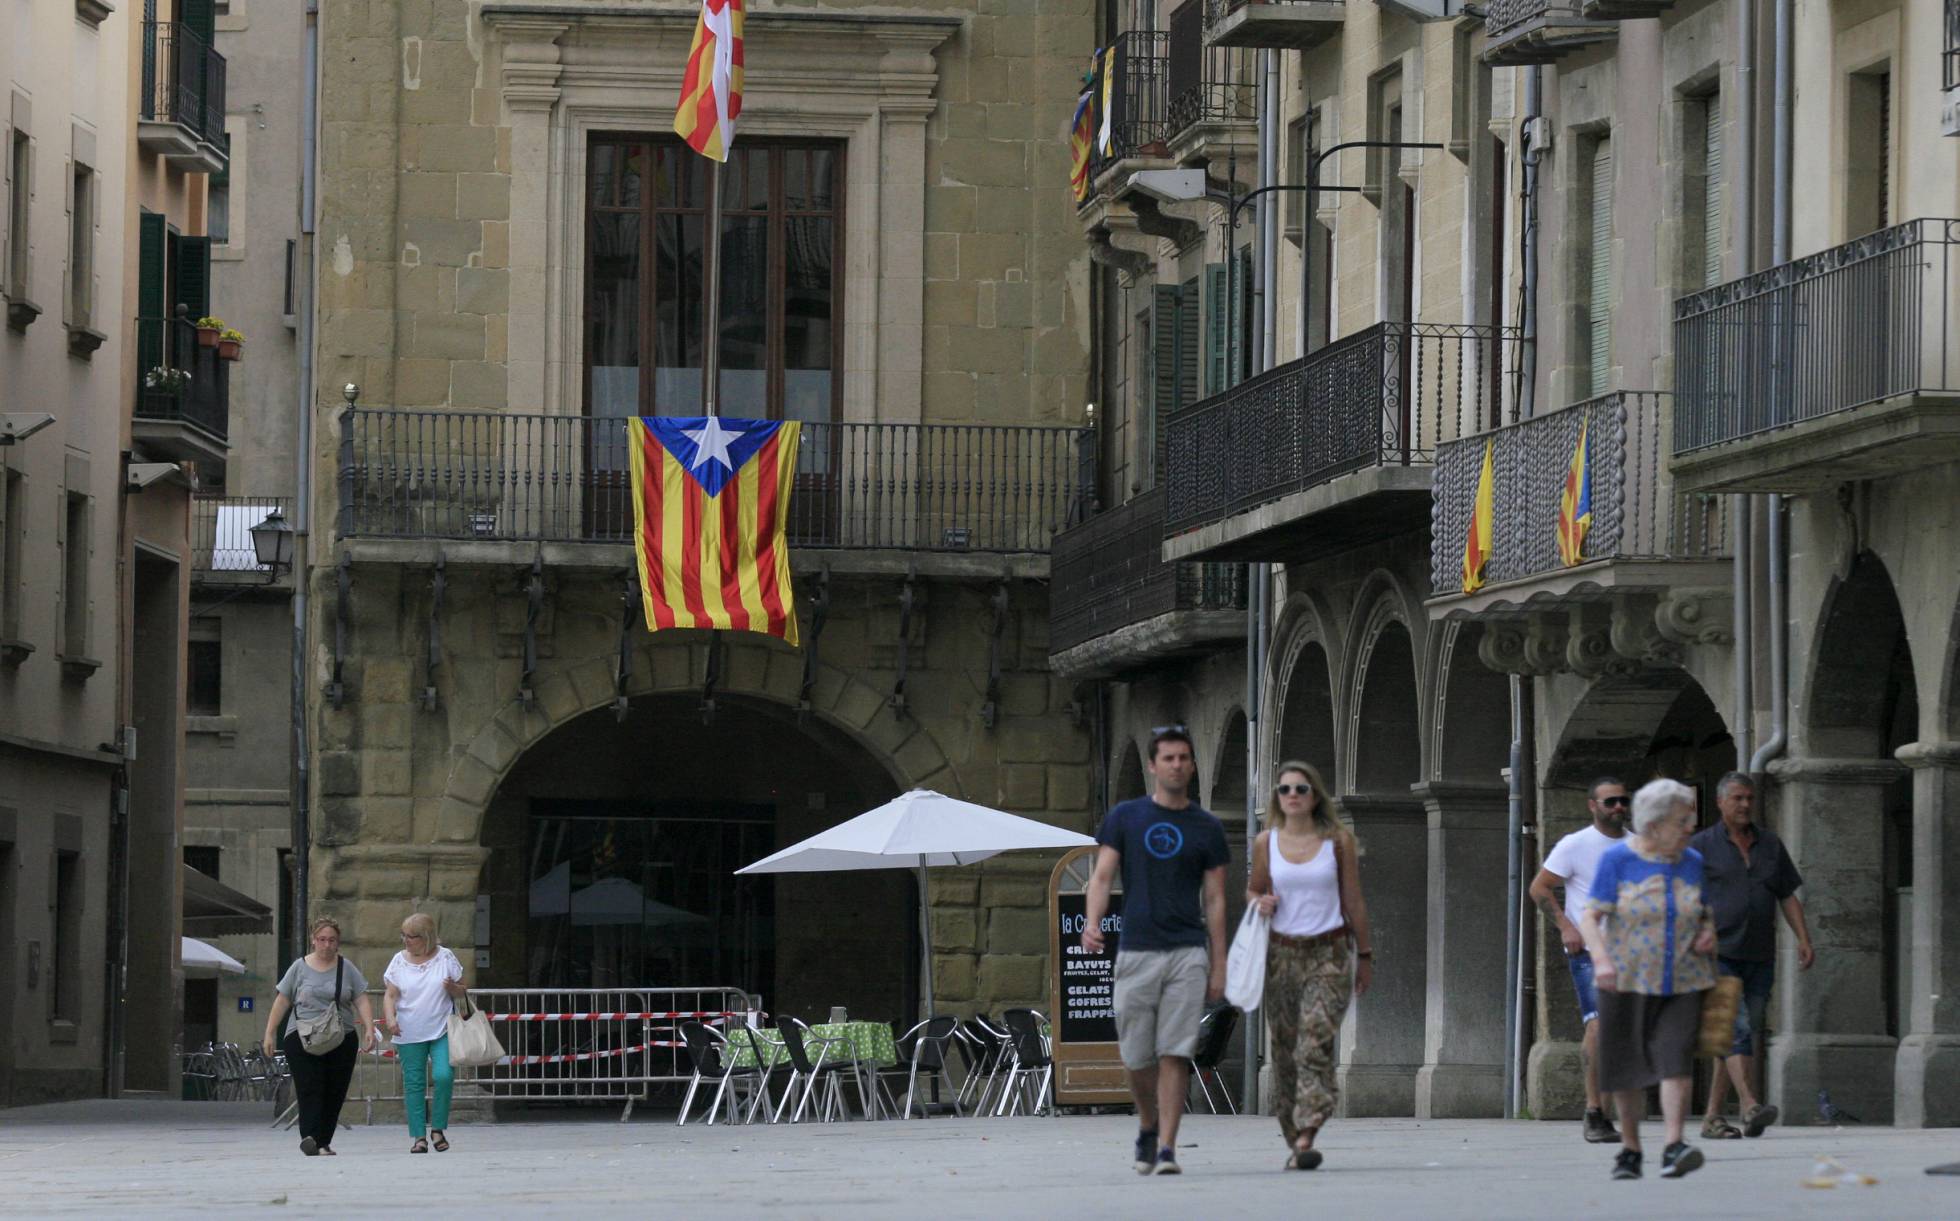 Conflicto "nacionalista" Catalunya, España. [1] - Página 9 1462473908_855793_1462477367_noticia_normal_recorte1